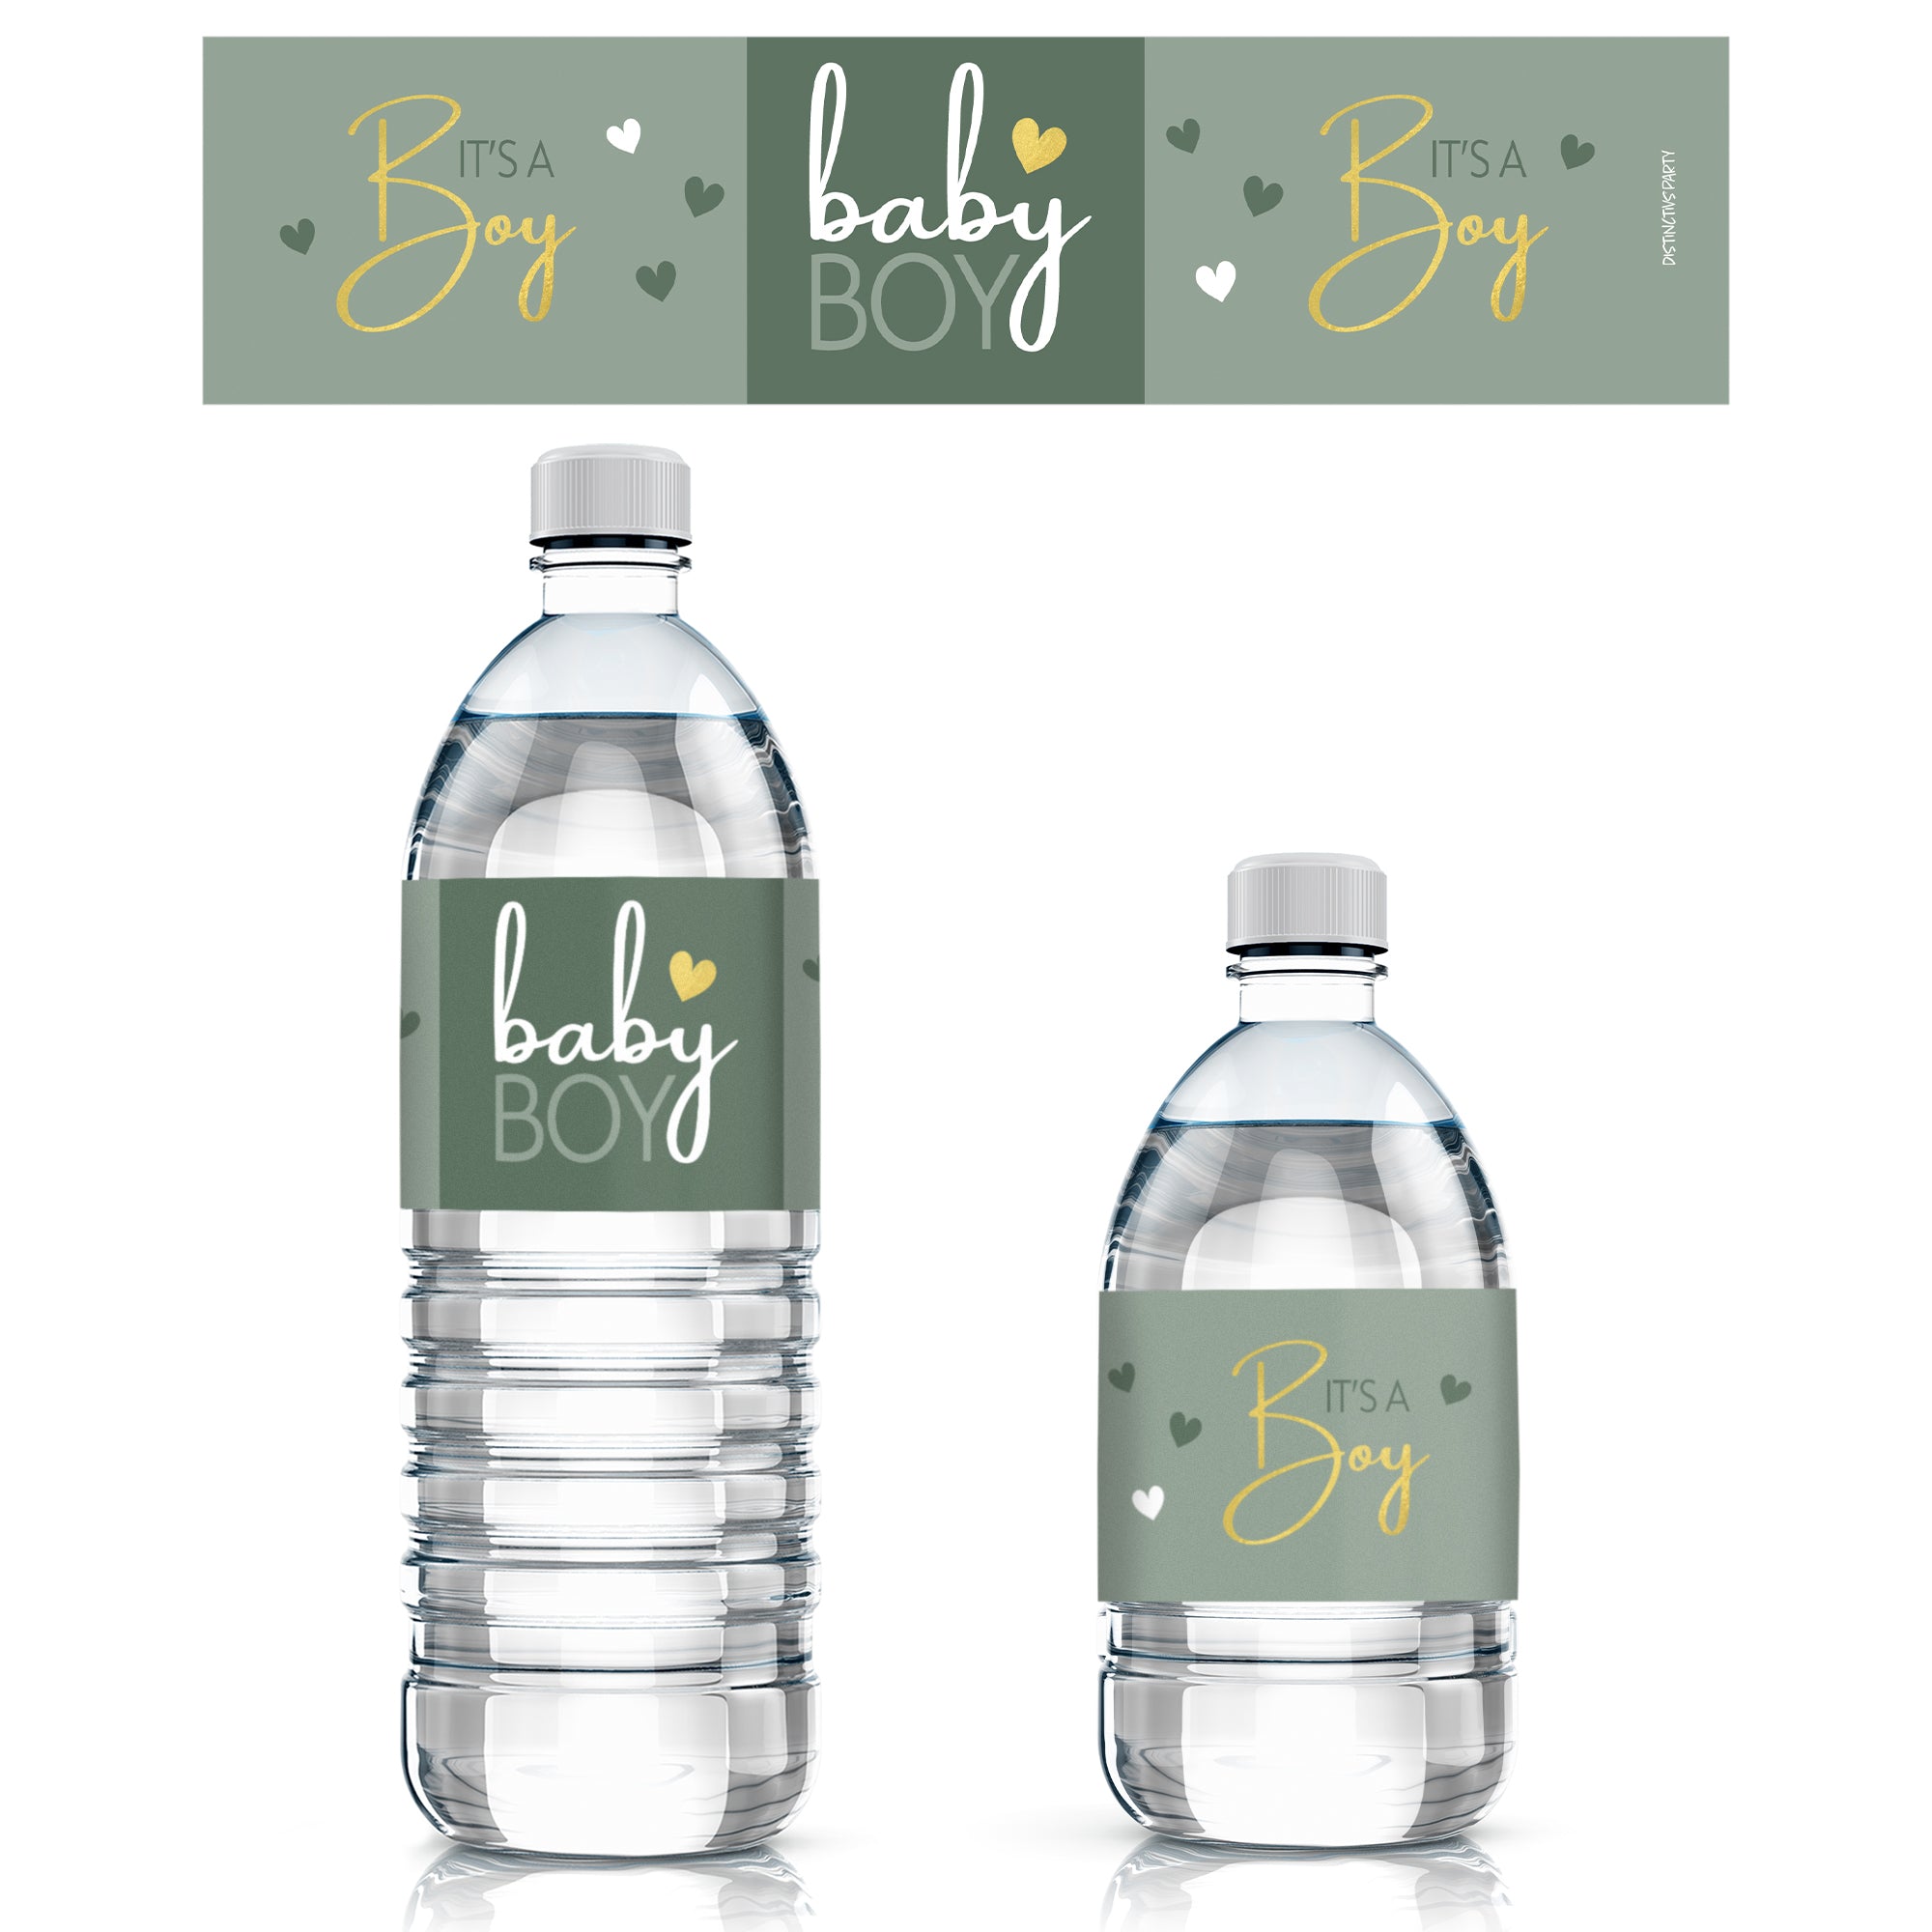 Personalized Water Bottle Labels - It's a Boy!